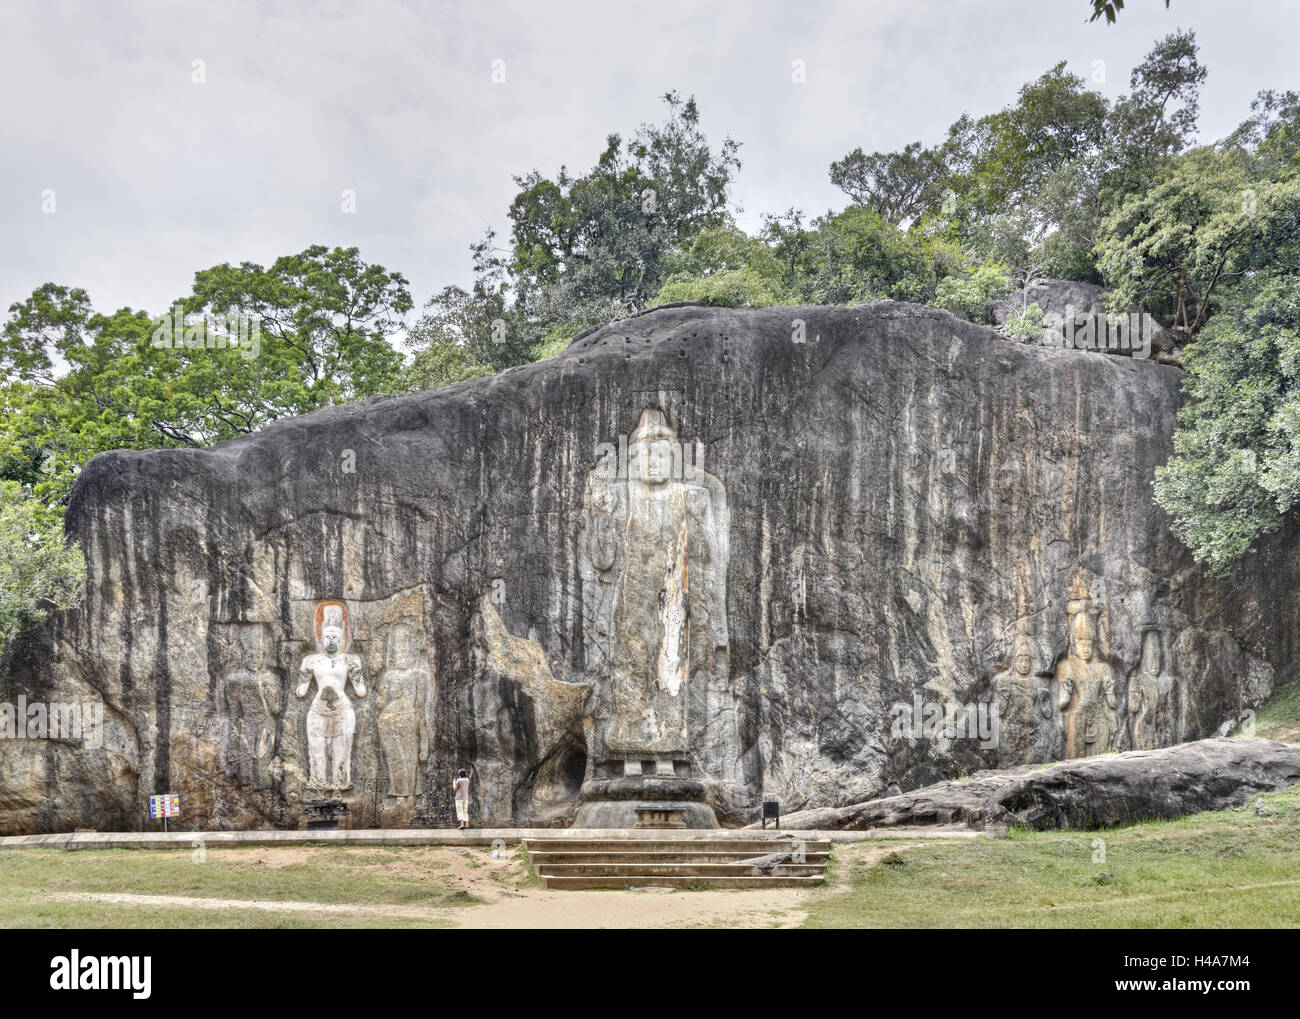 Sri Lanka, Wellawaya, Buduruwagala, temple bouddhiste dans la bile, Bouddha, ciselées Banque D'Images